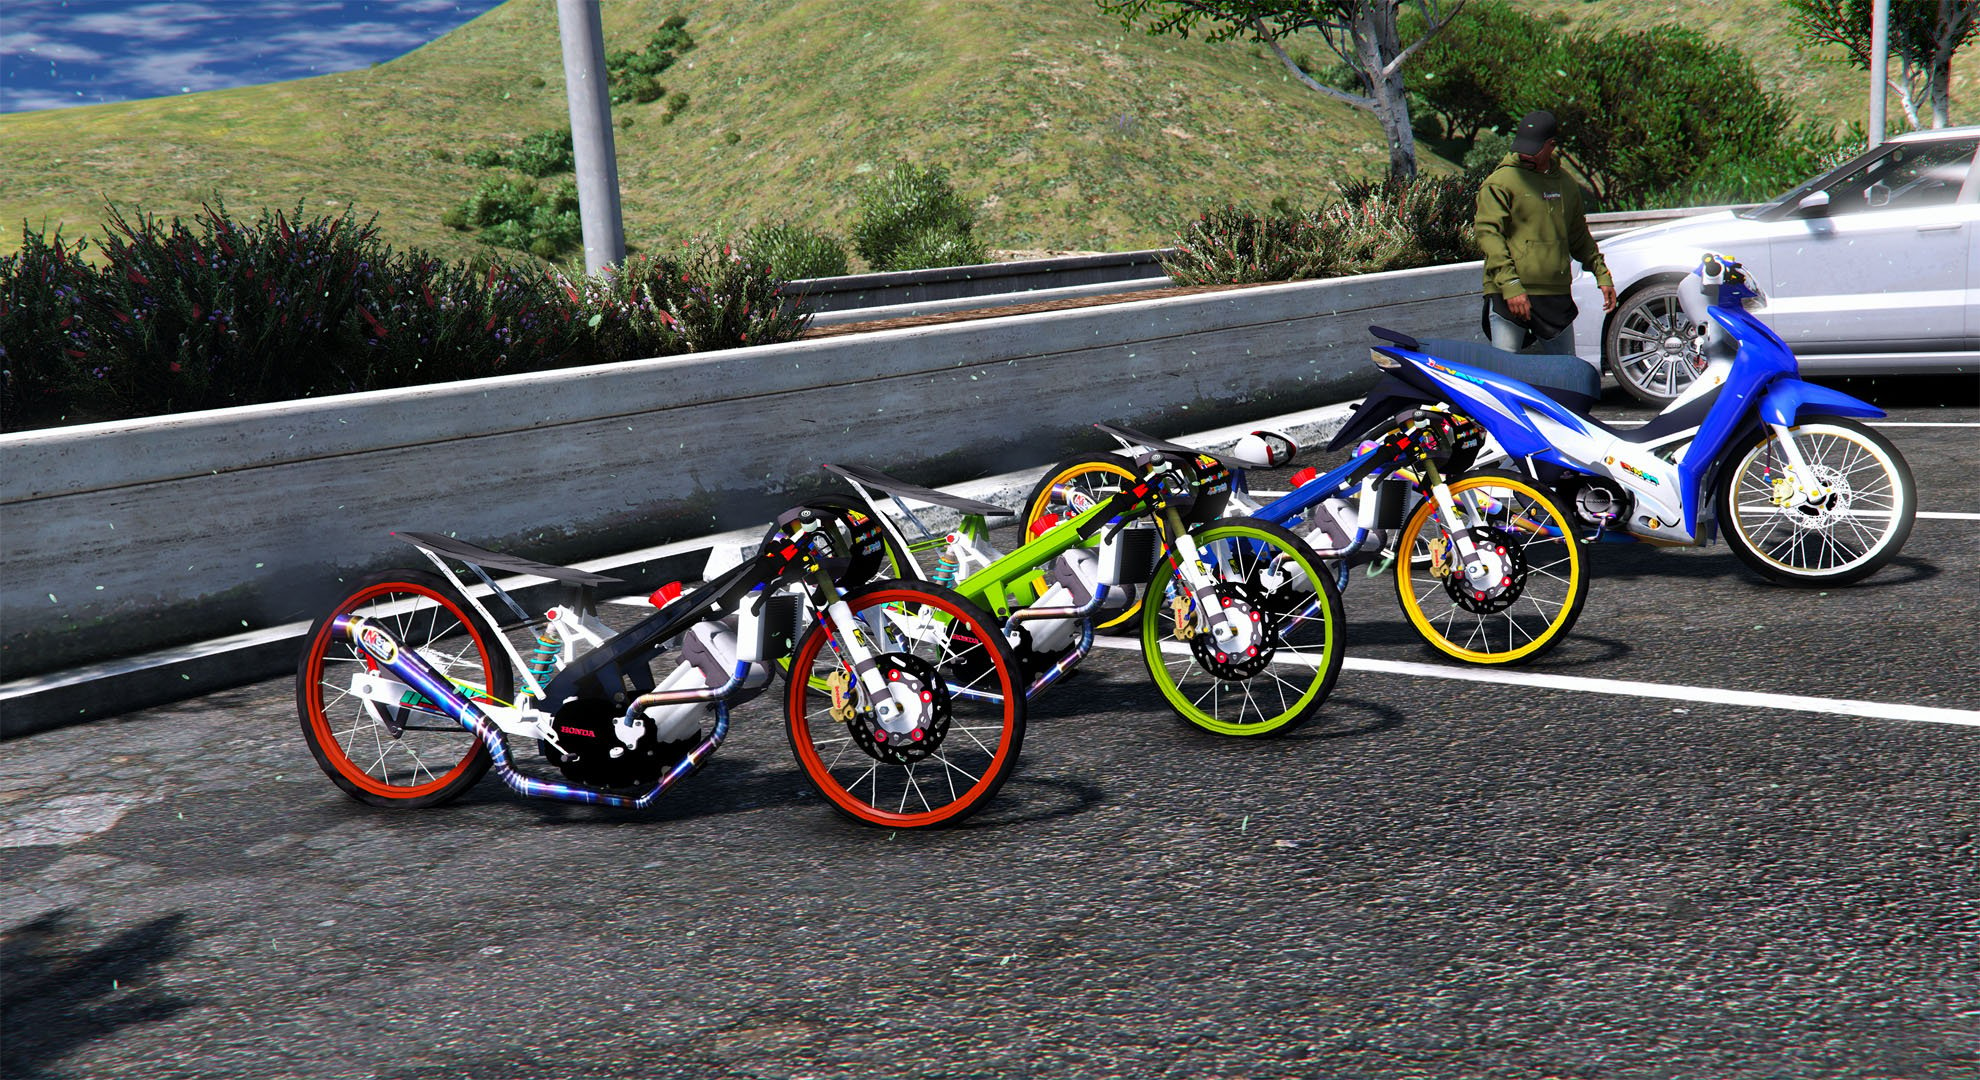 raider 150 drag bike